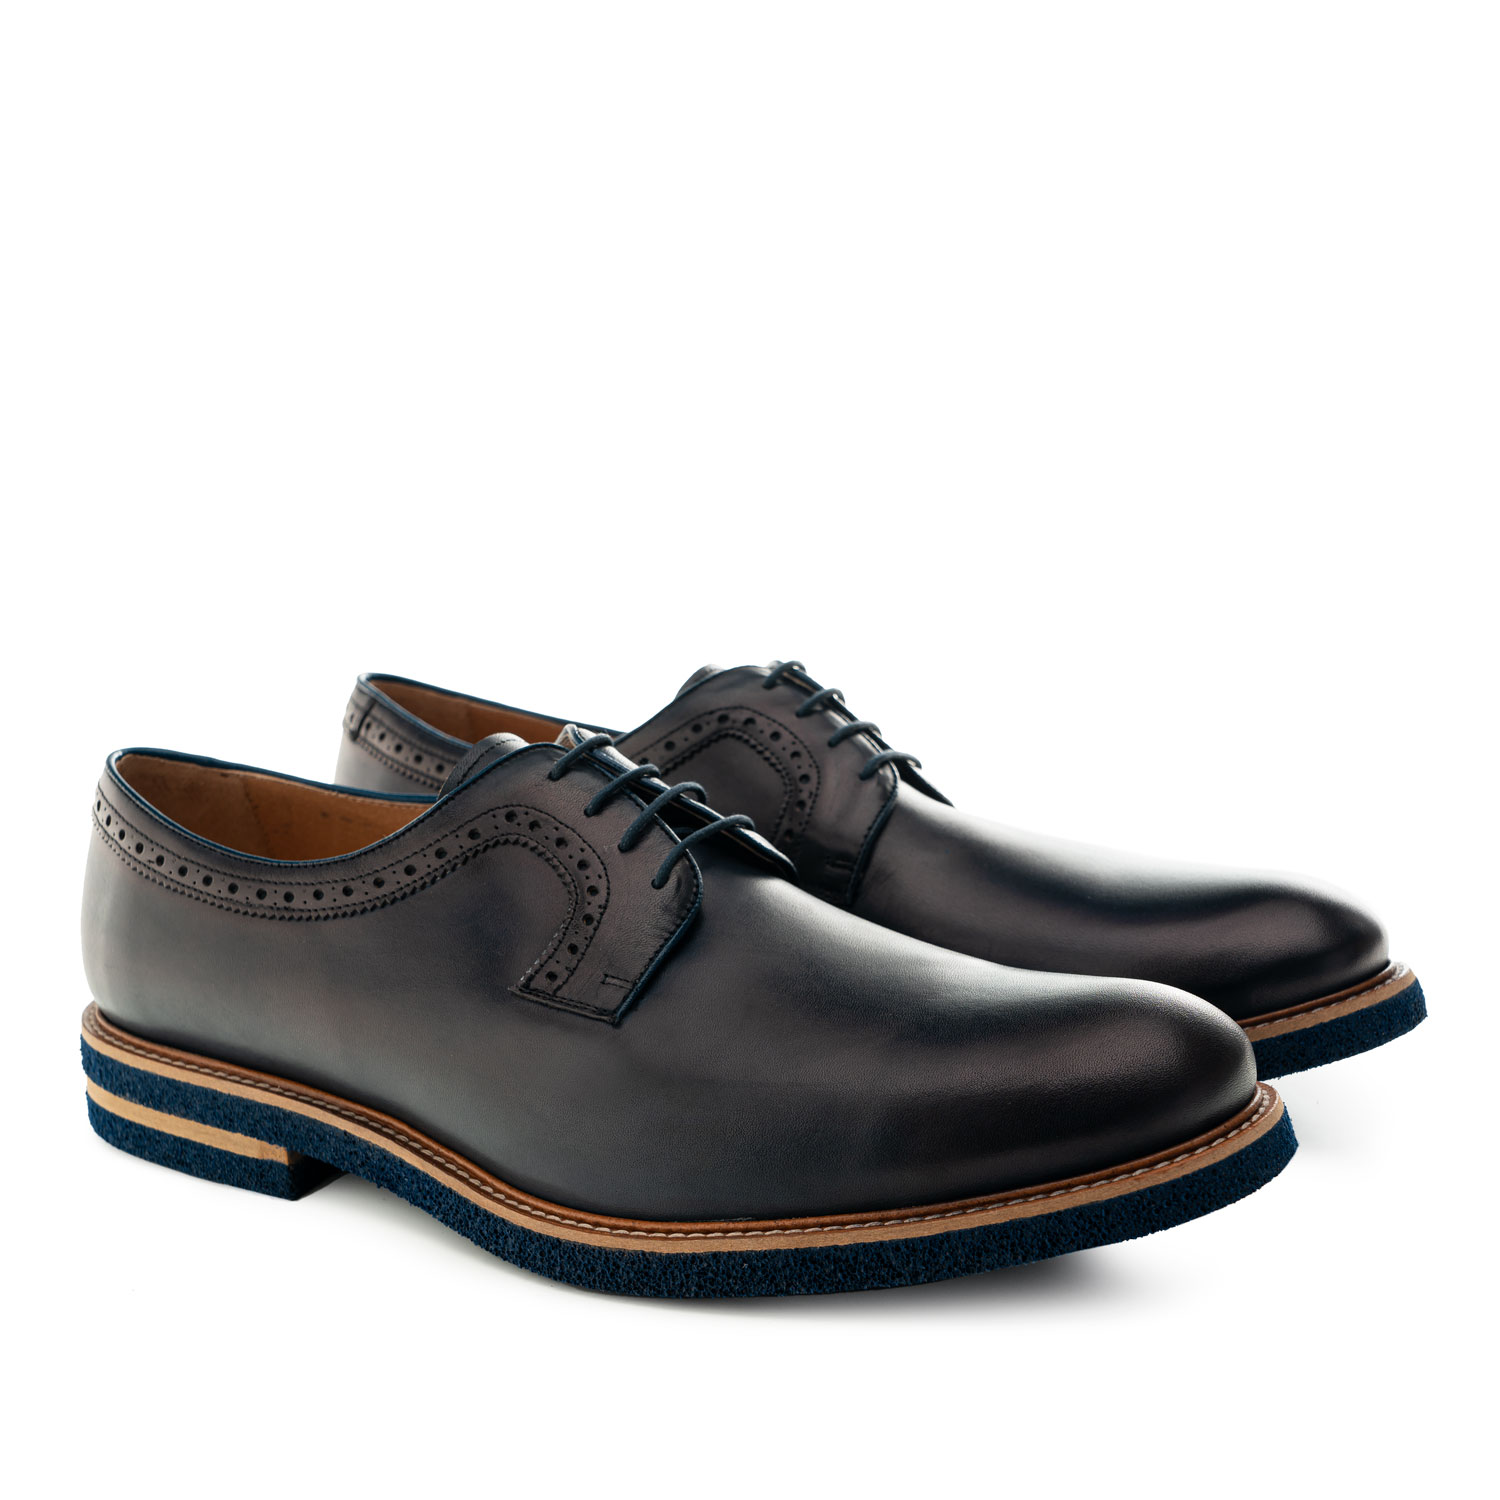 Chaussures pour Hommes style Oxford en cuir Bleu Marine 